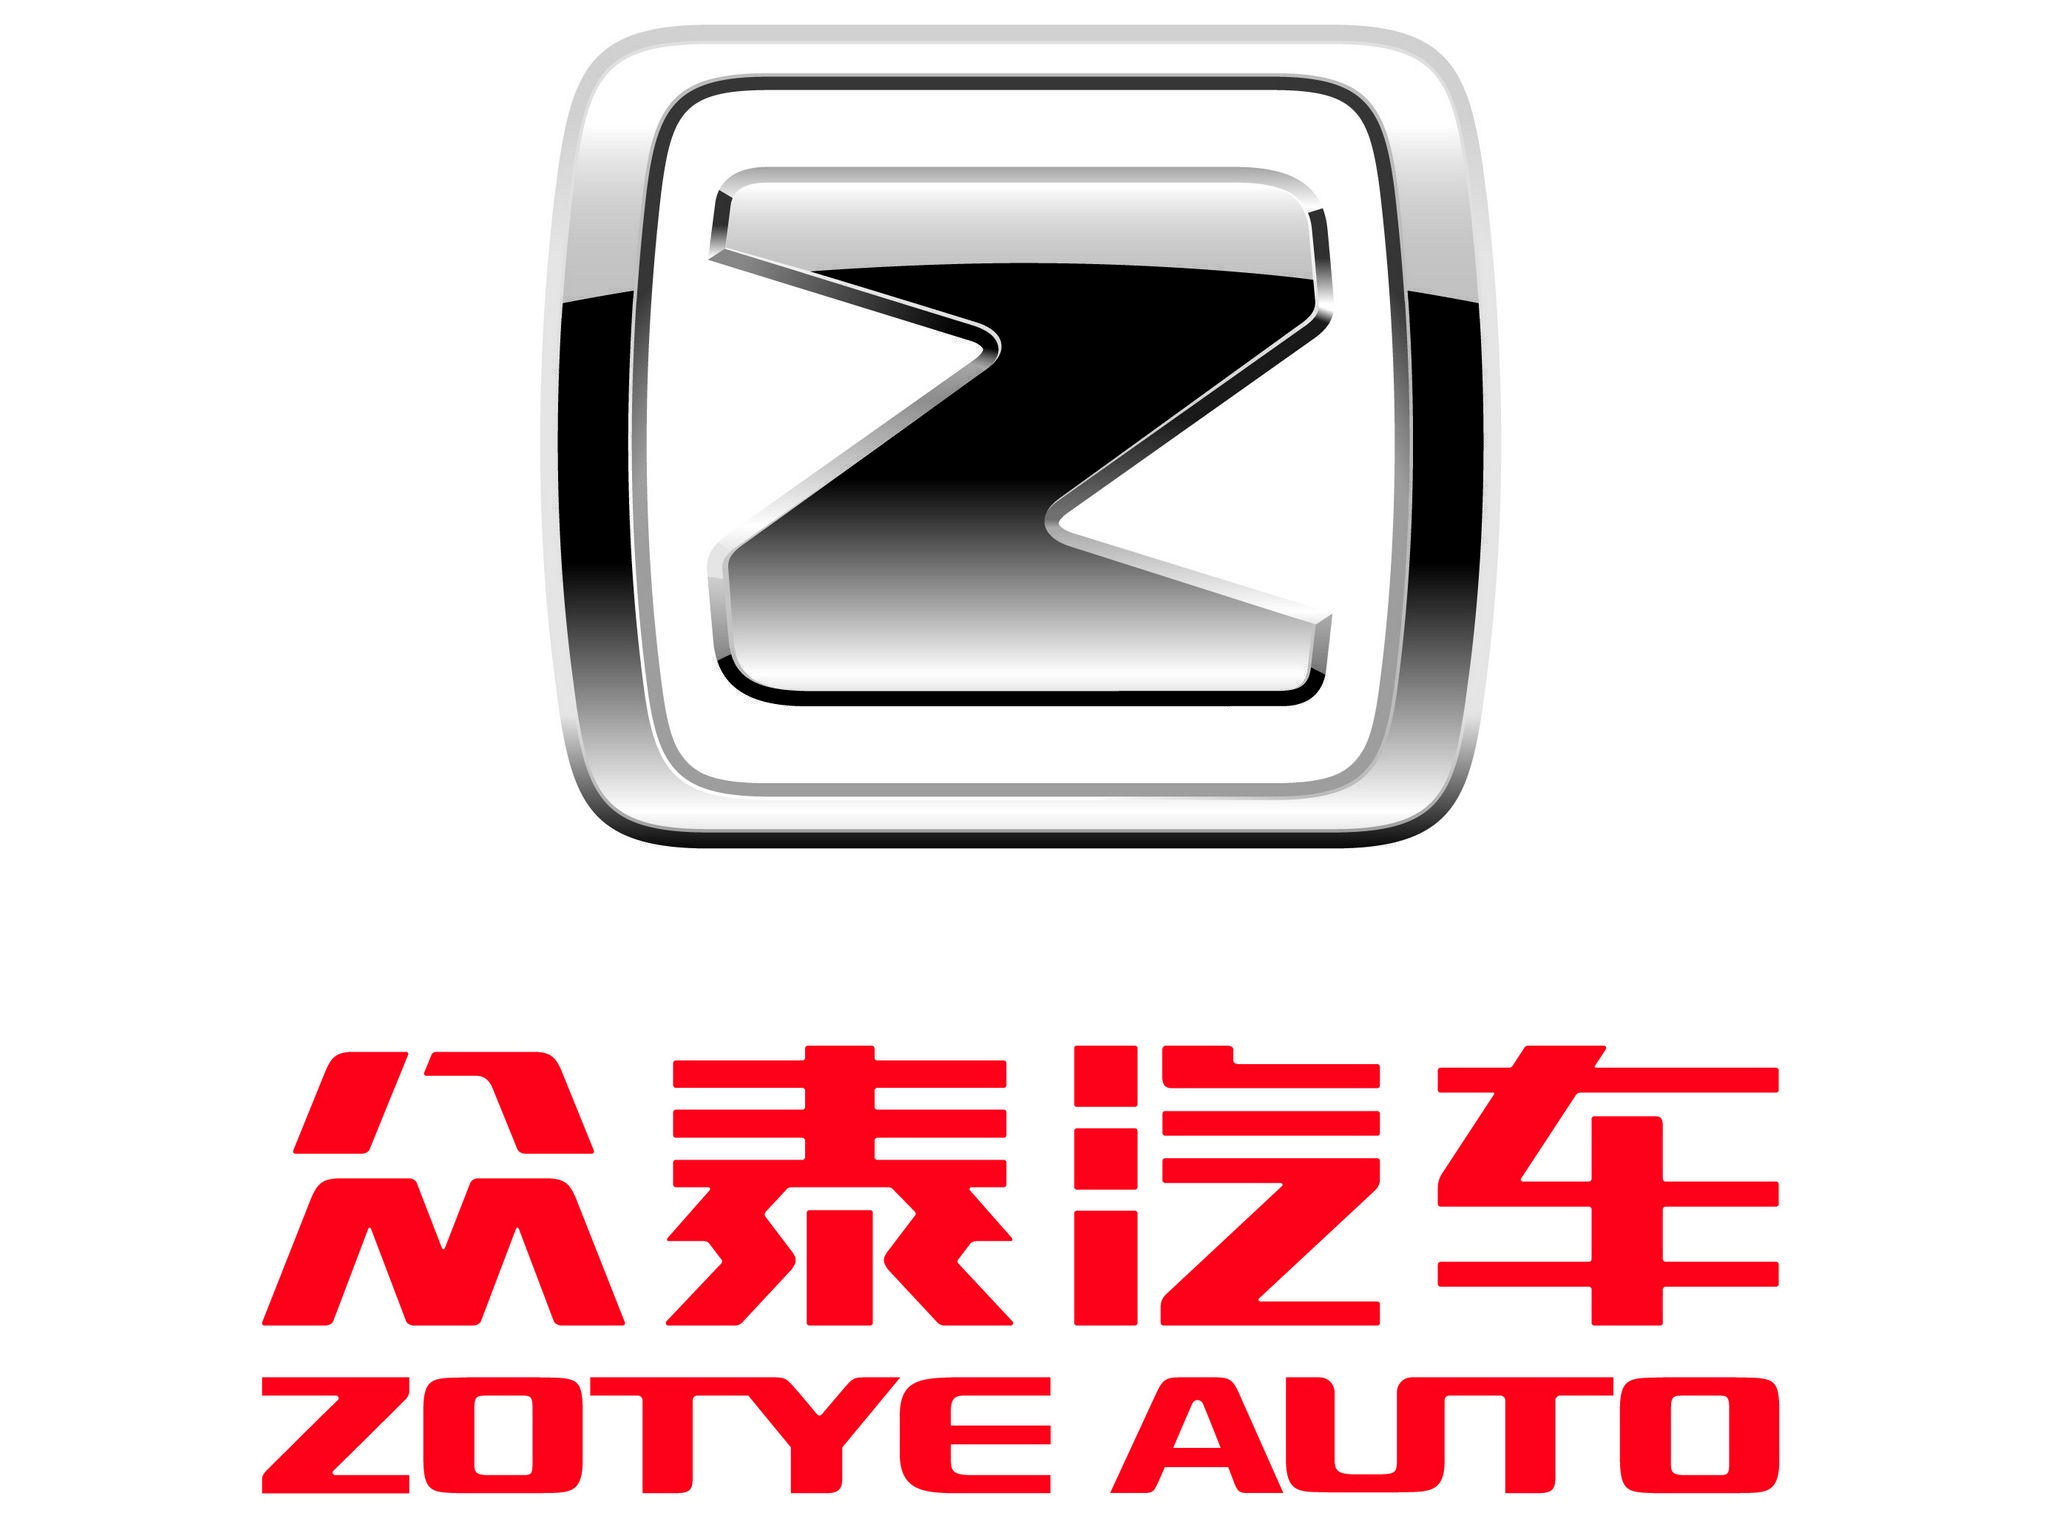 Zotye Logo - Logo Zotye